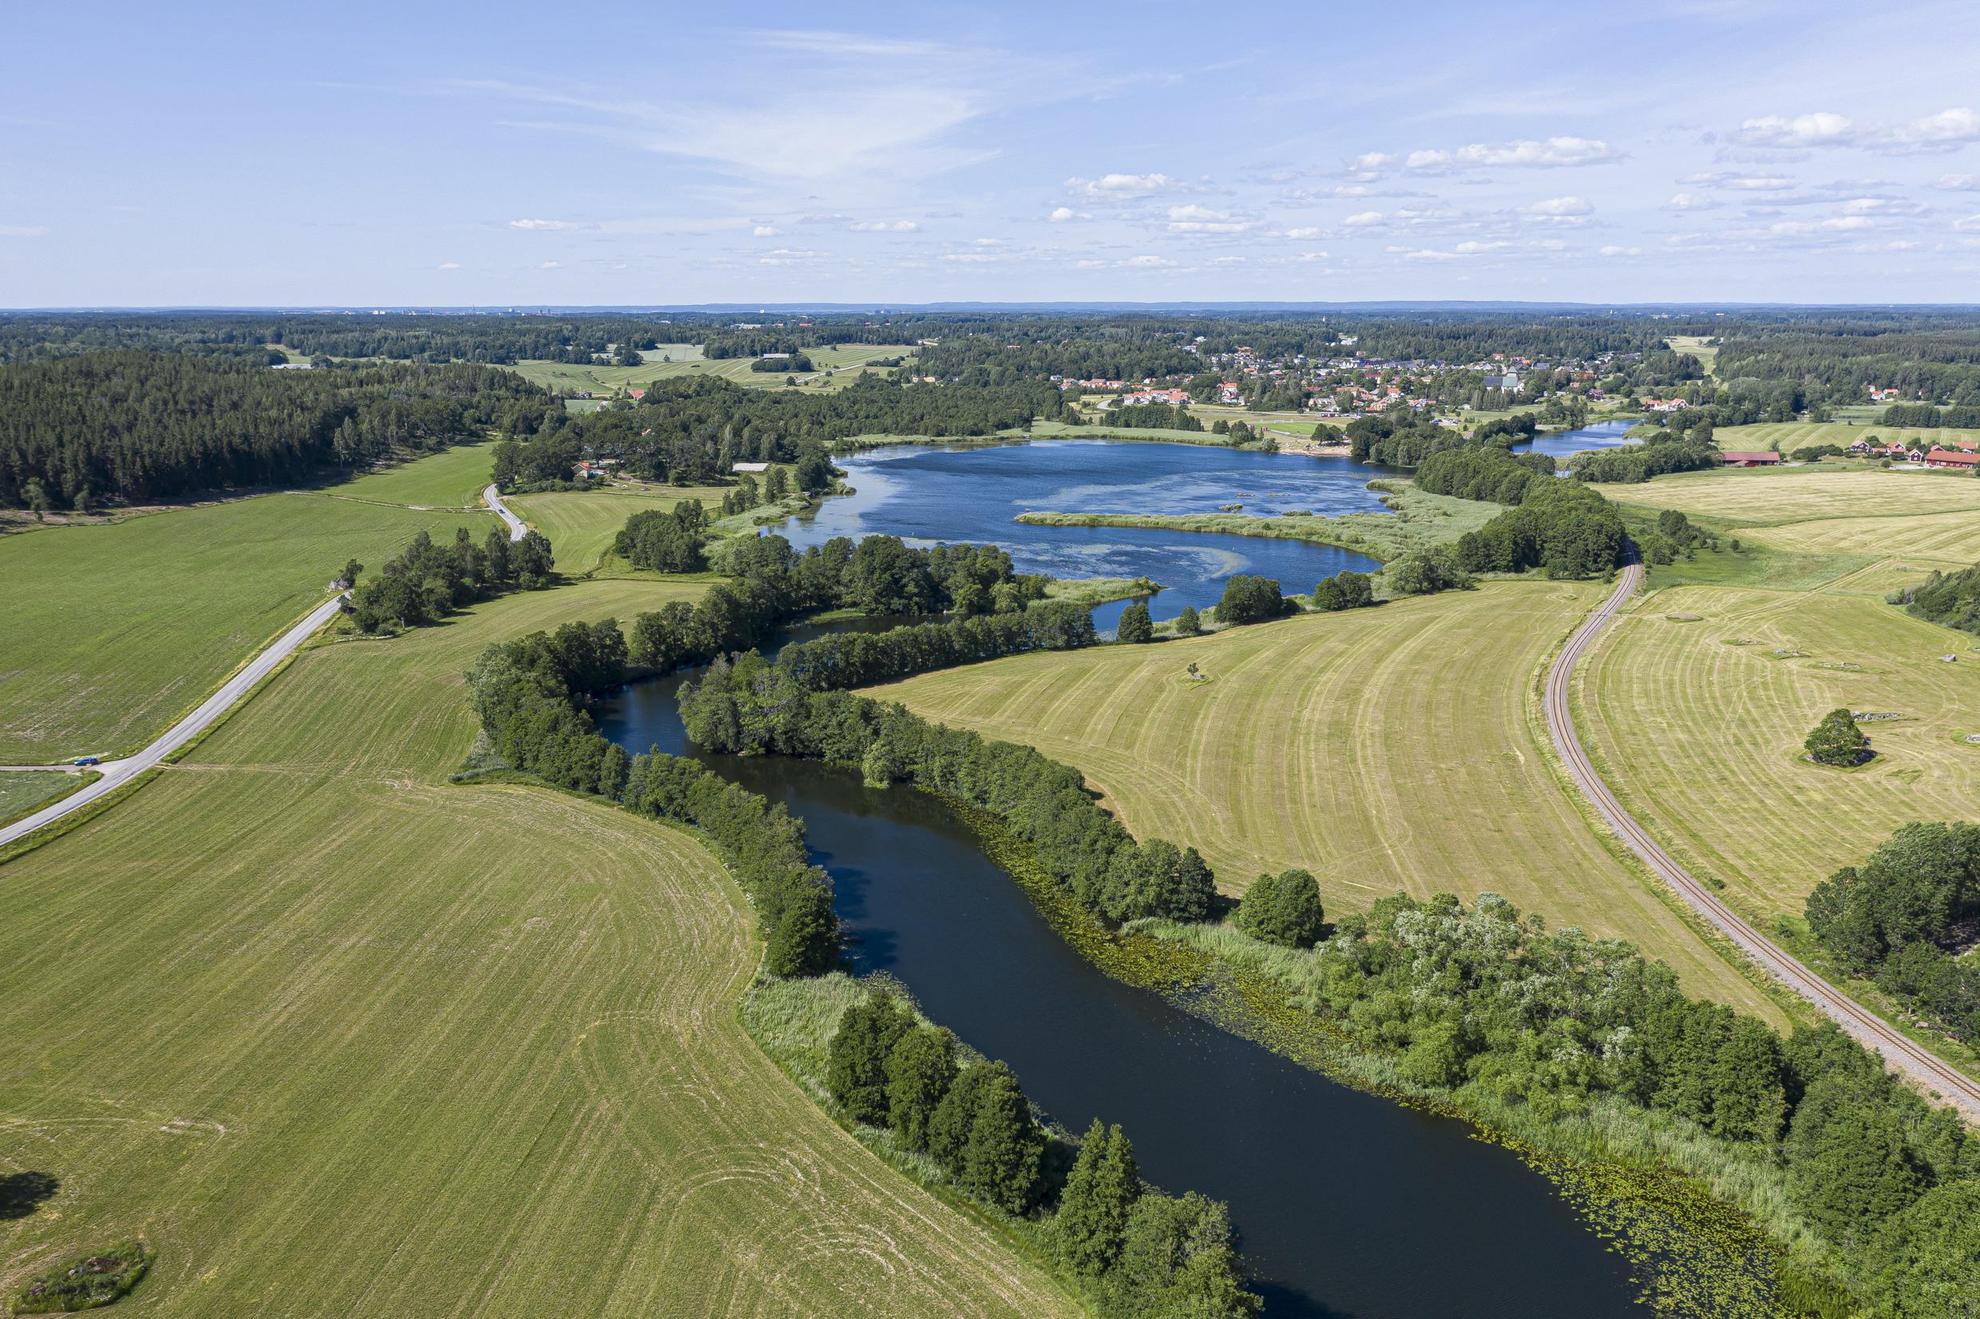 Een luchtfoto van een rivier die slingert tussen groene velden en bomen.